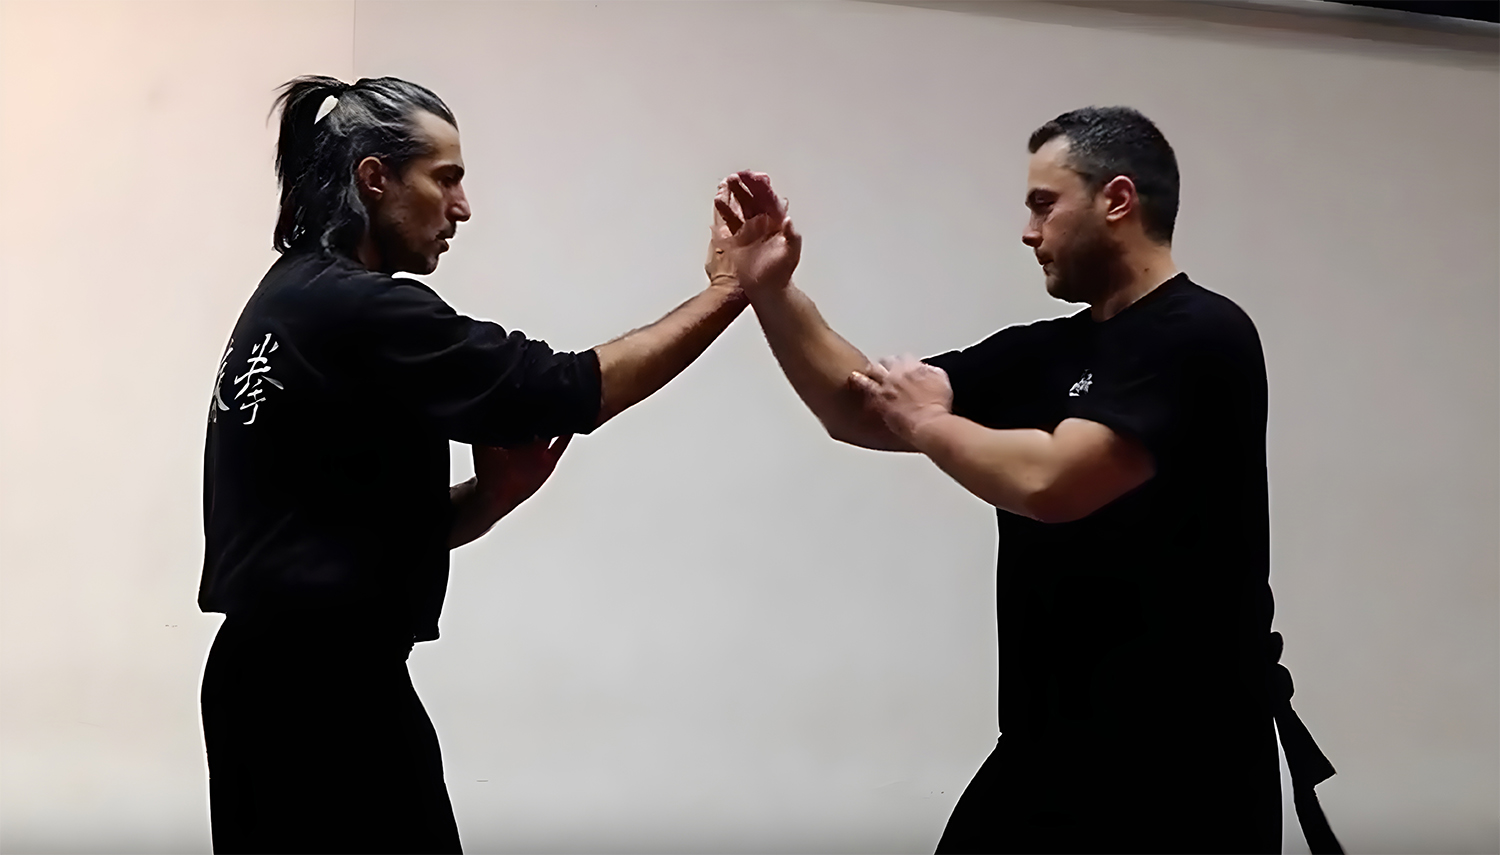 Applications de combat Wing Chun